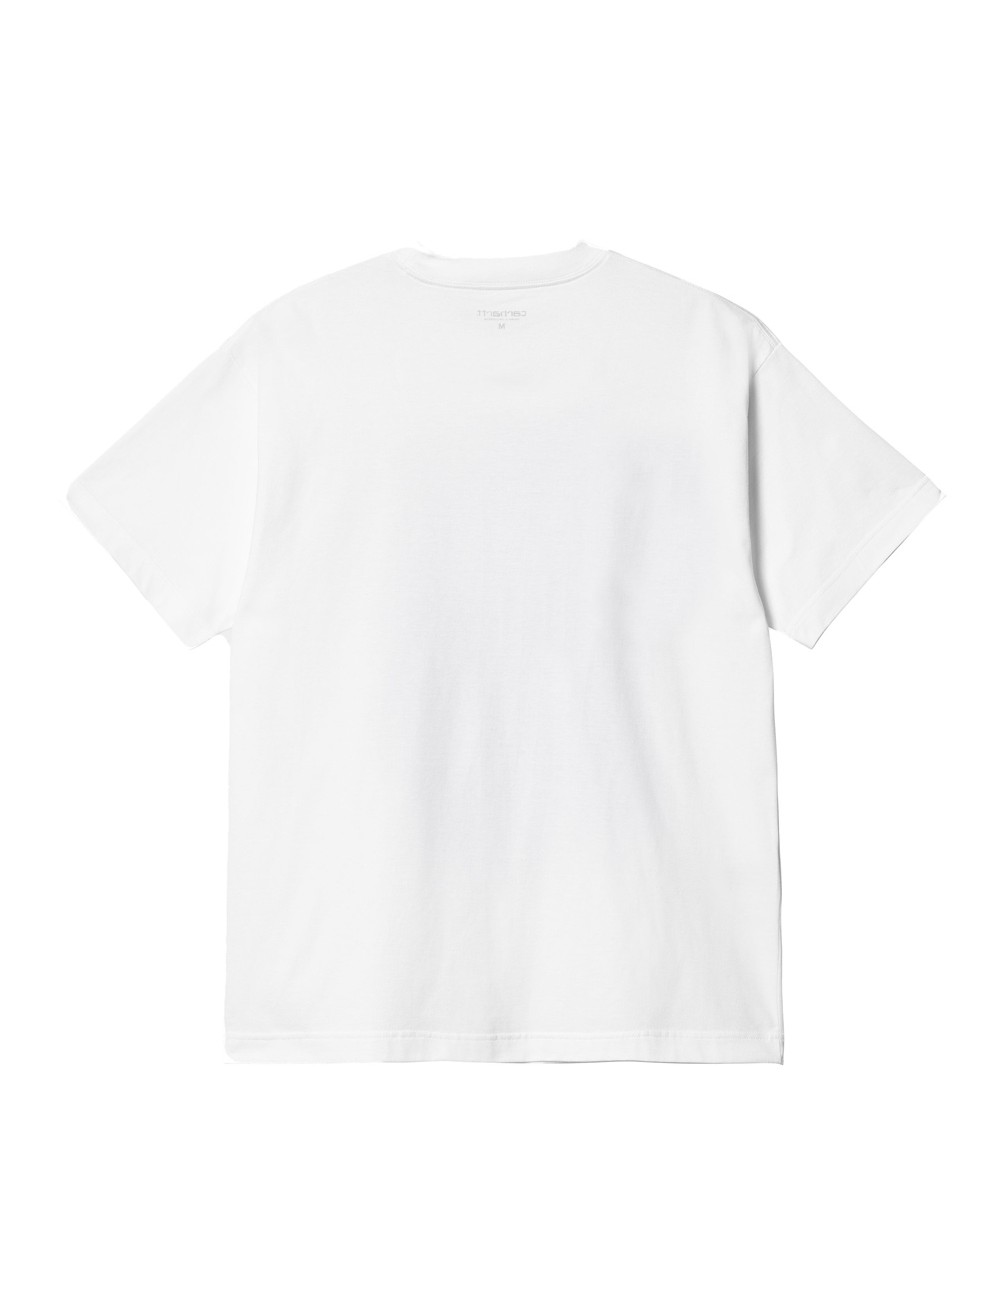 Carhartt WIP S/S Babybrush Duck T-Shirt White I032124-02-XX